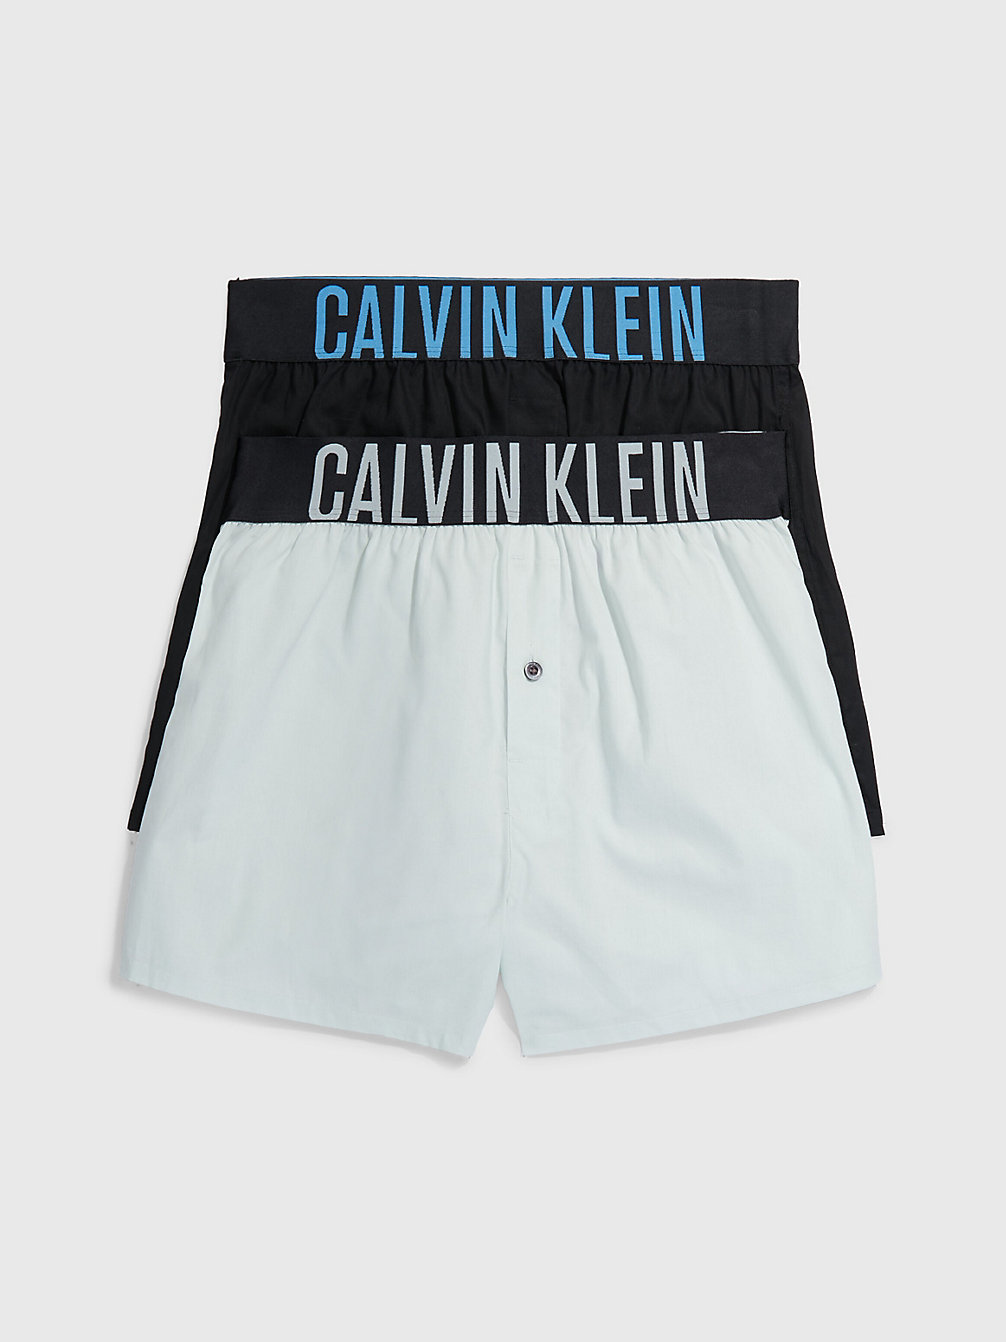 BLACK W/ SIGNATURE BLUE, DRAGON FLY Lot De 2 Caleçons Slim Fit - Intense Power undefined hommes Calvin Klein